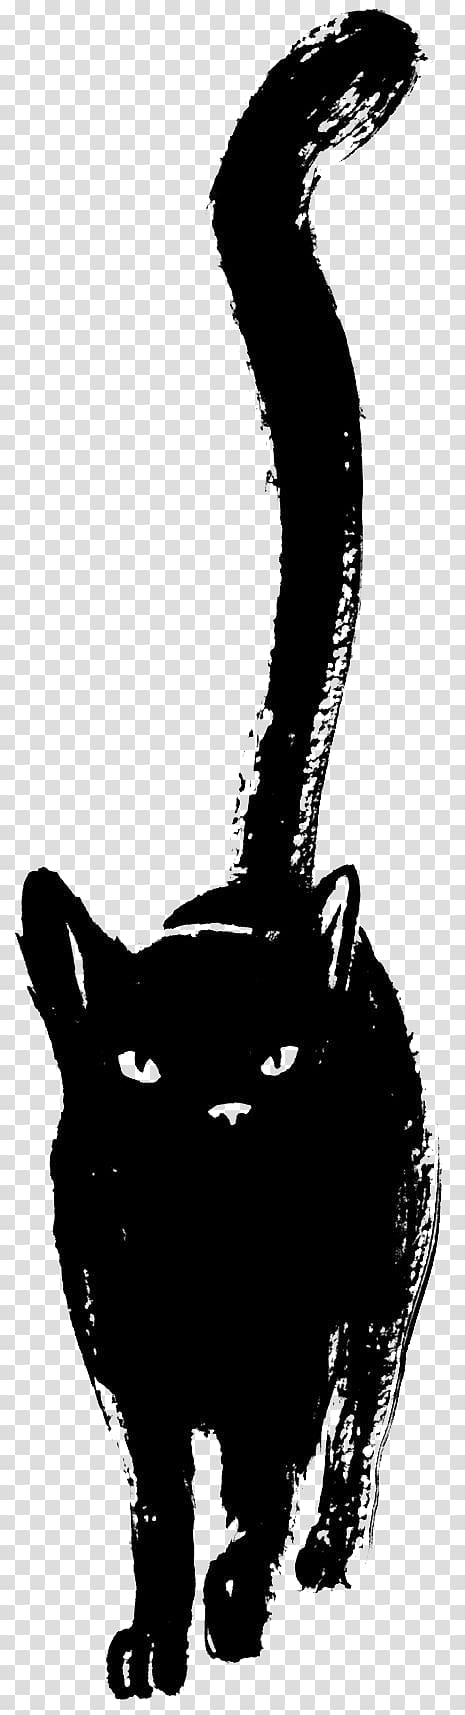 black cat illustration, Black cat Black panther Drawing Sketch, Black Cat transparent background PNG clipart